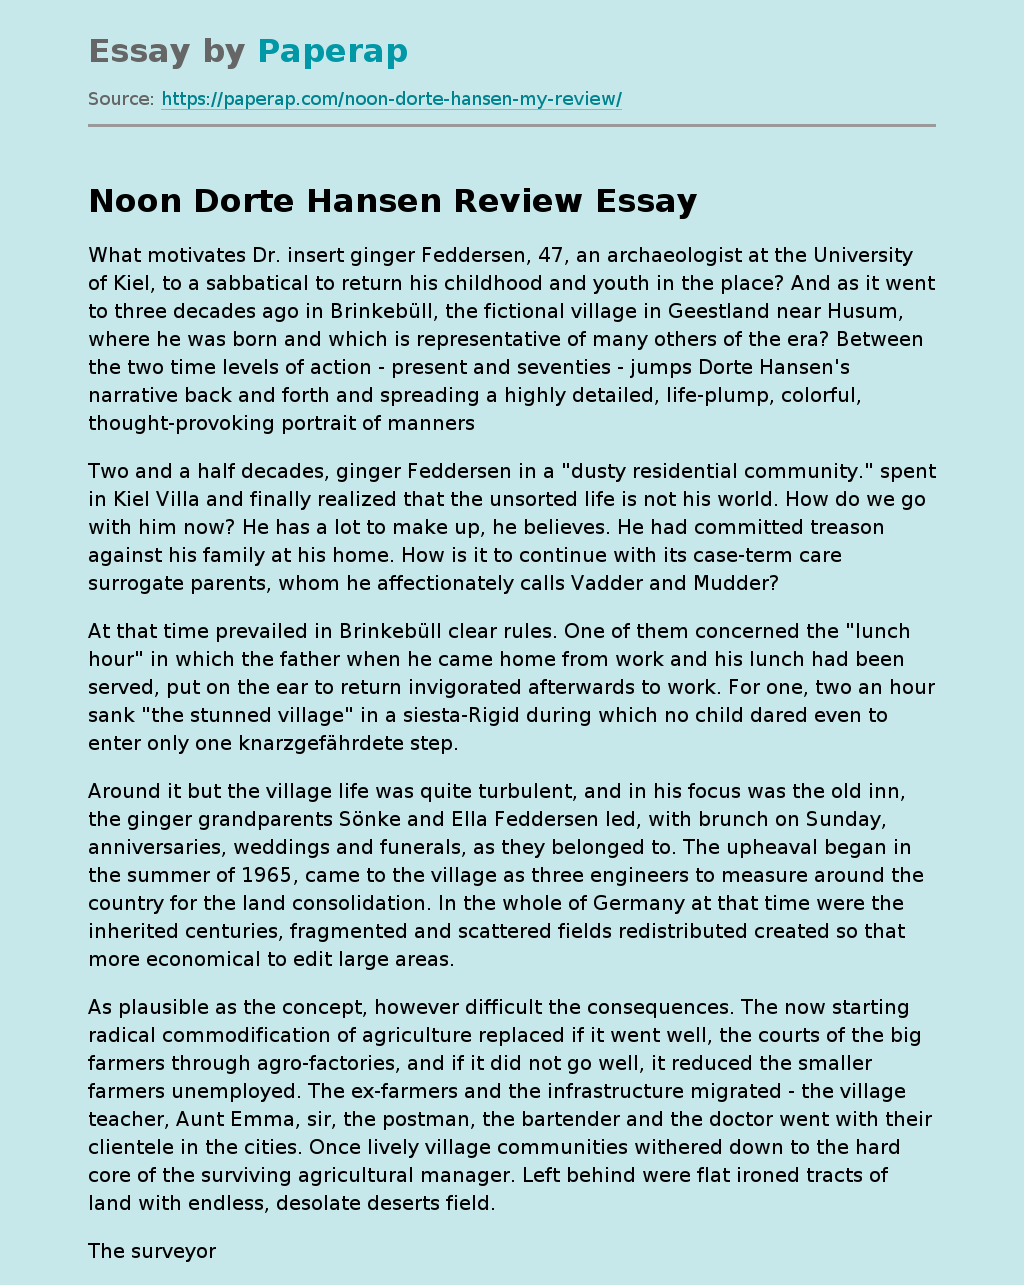 Noon Dorte Hansen Review